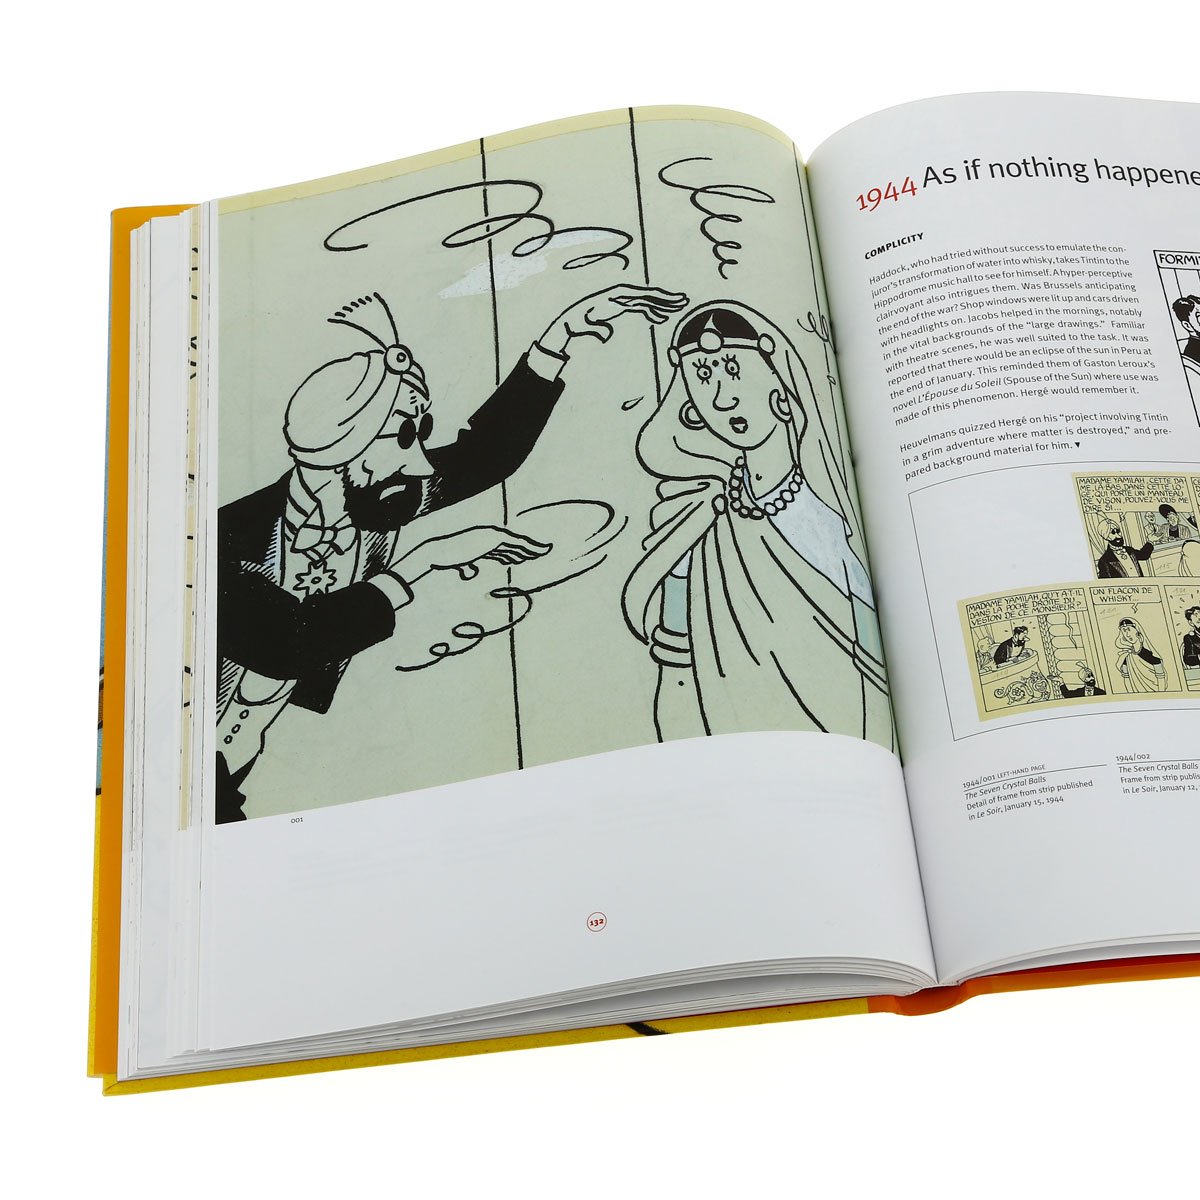 The Art of Hergé vol.2